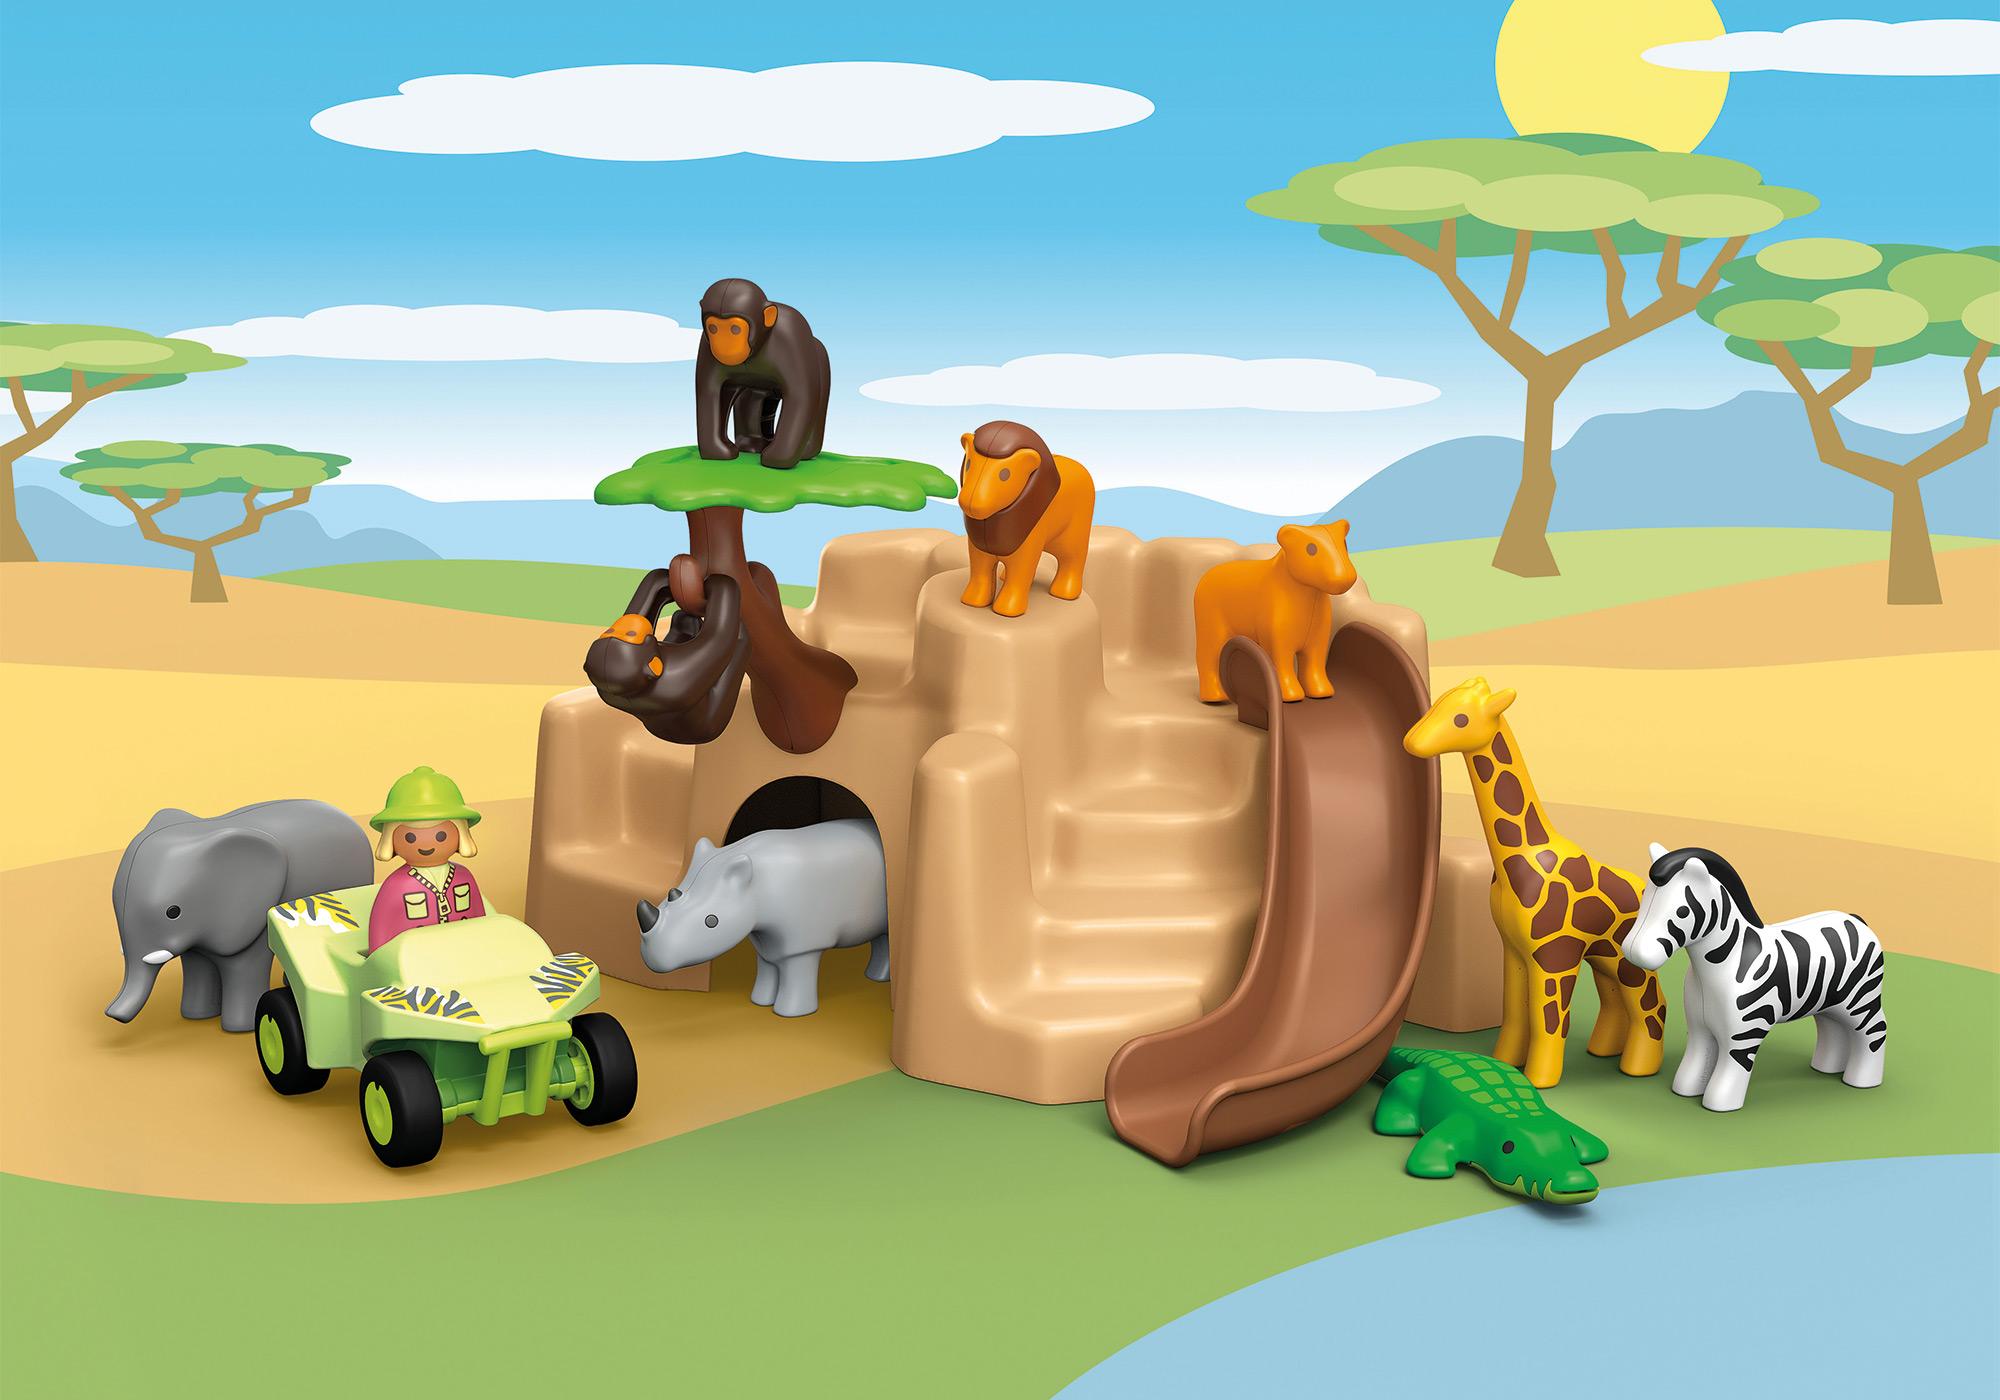 Playmobil 1.2.3 - Animaux de la savane avec gardien et touristes PLAYMOBIL  : Comparateur, Avis, Prix